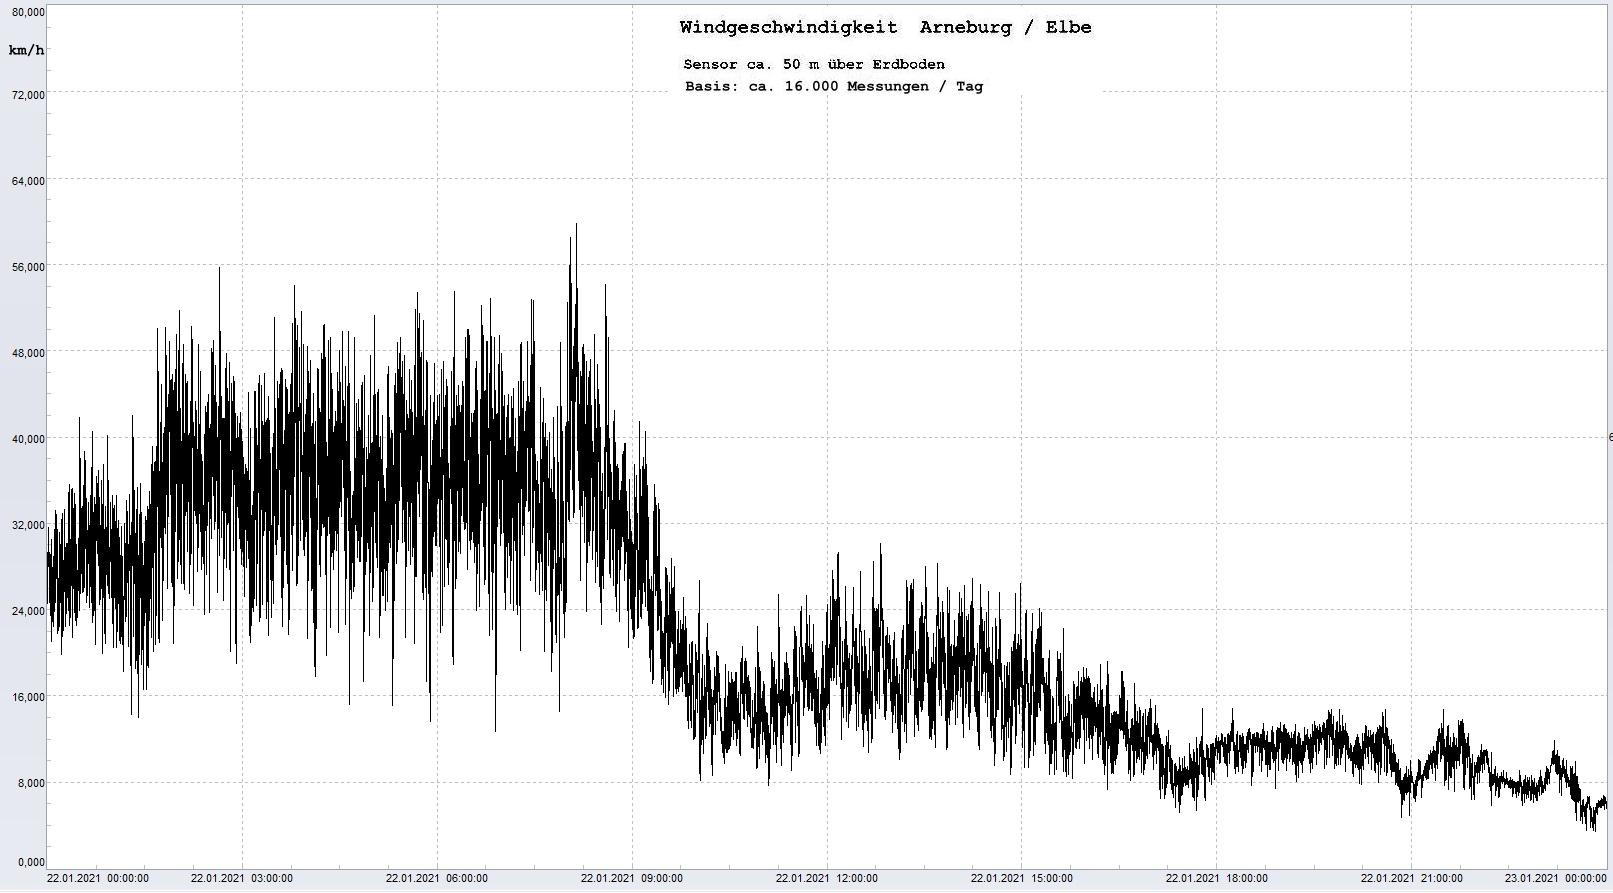 Arneburg Tages-Diagramm Winddaten, 22.01.2021
  Histogramm, Sensor auf Gebude, ca. 50 m ber Erdboden, Basis: 5s-Aufzeichnung